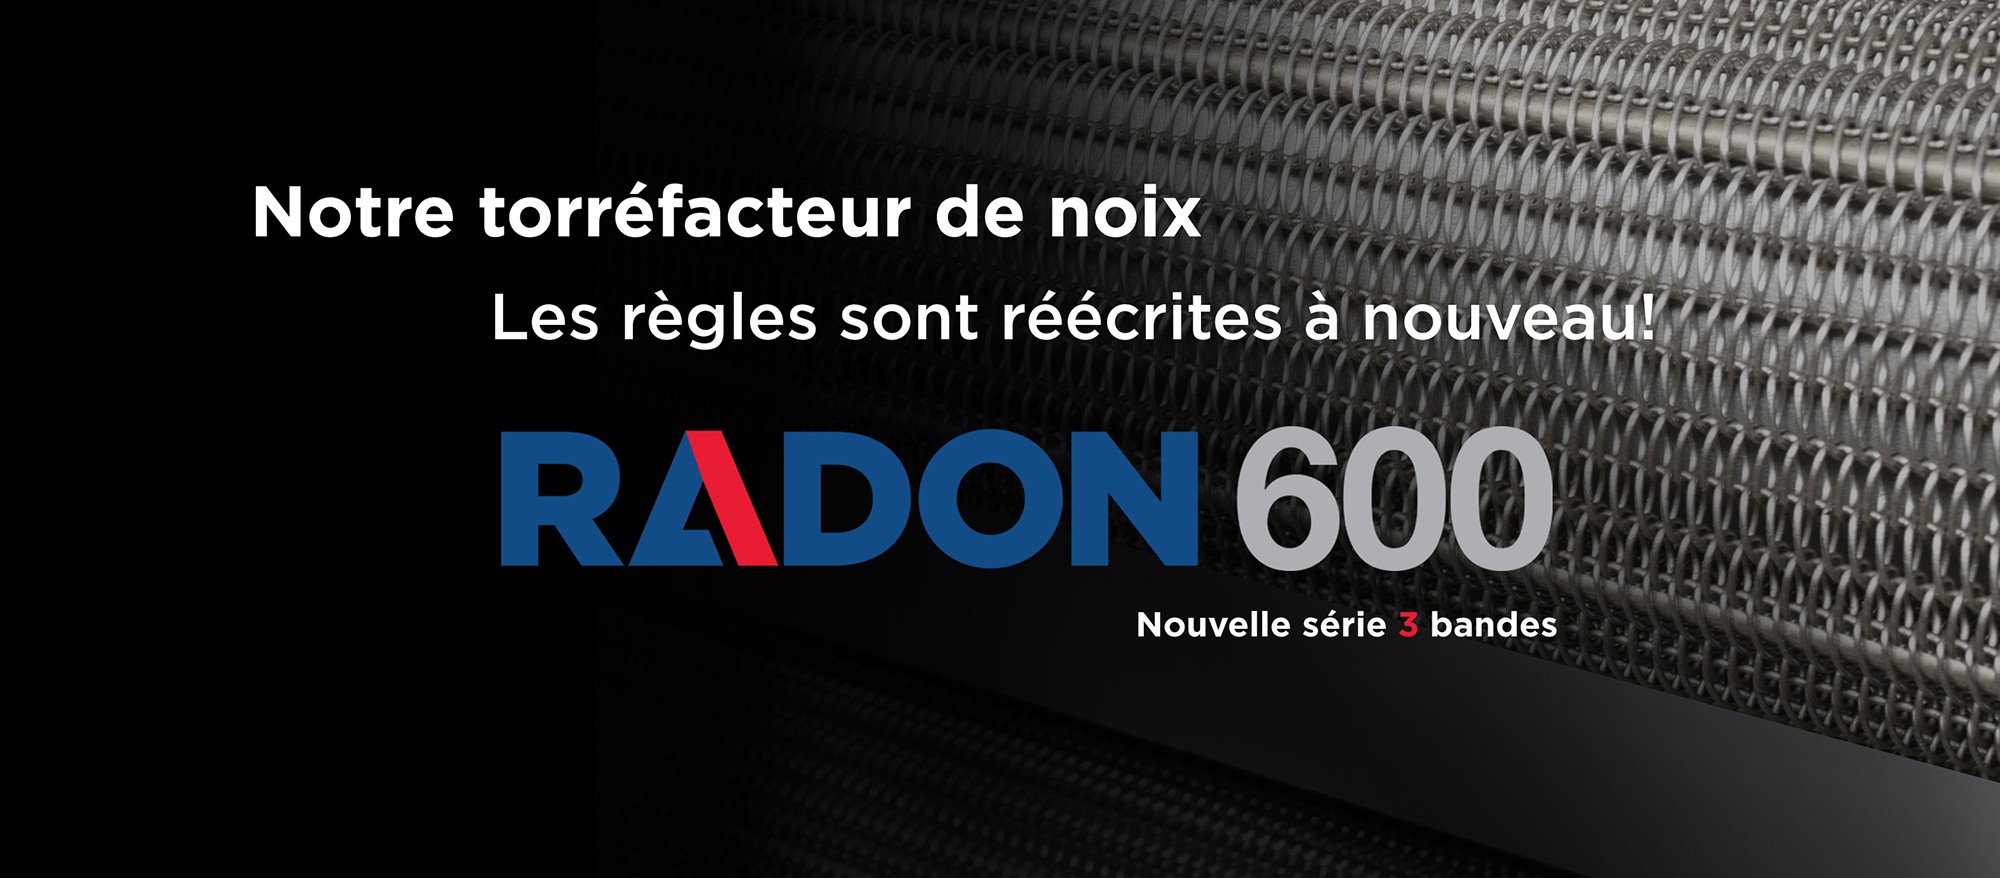 Radon 600 / Yeni 3 bantlı seri